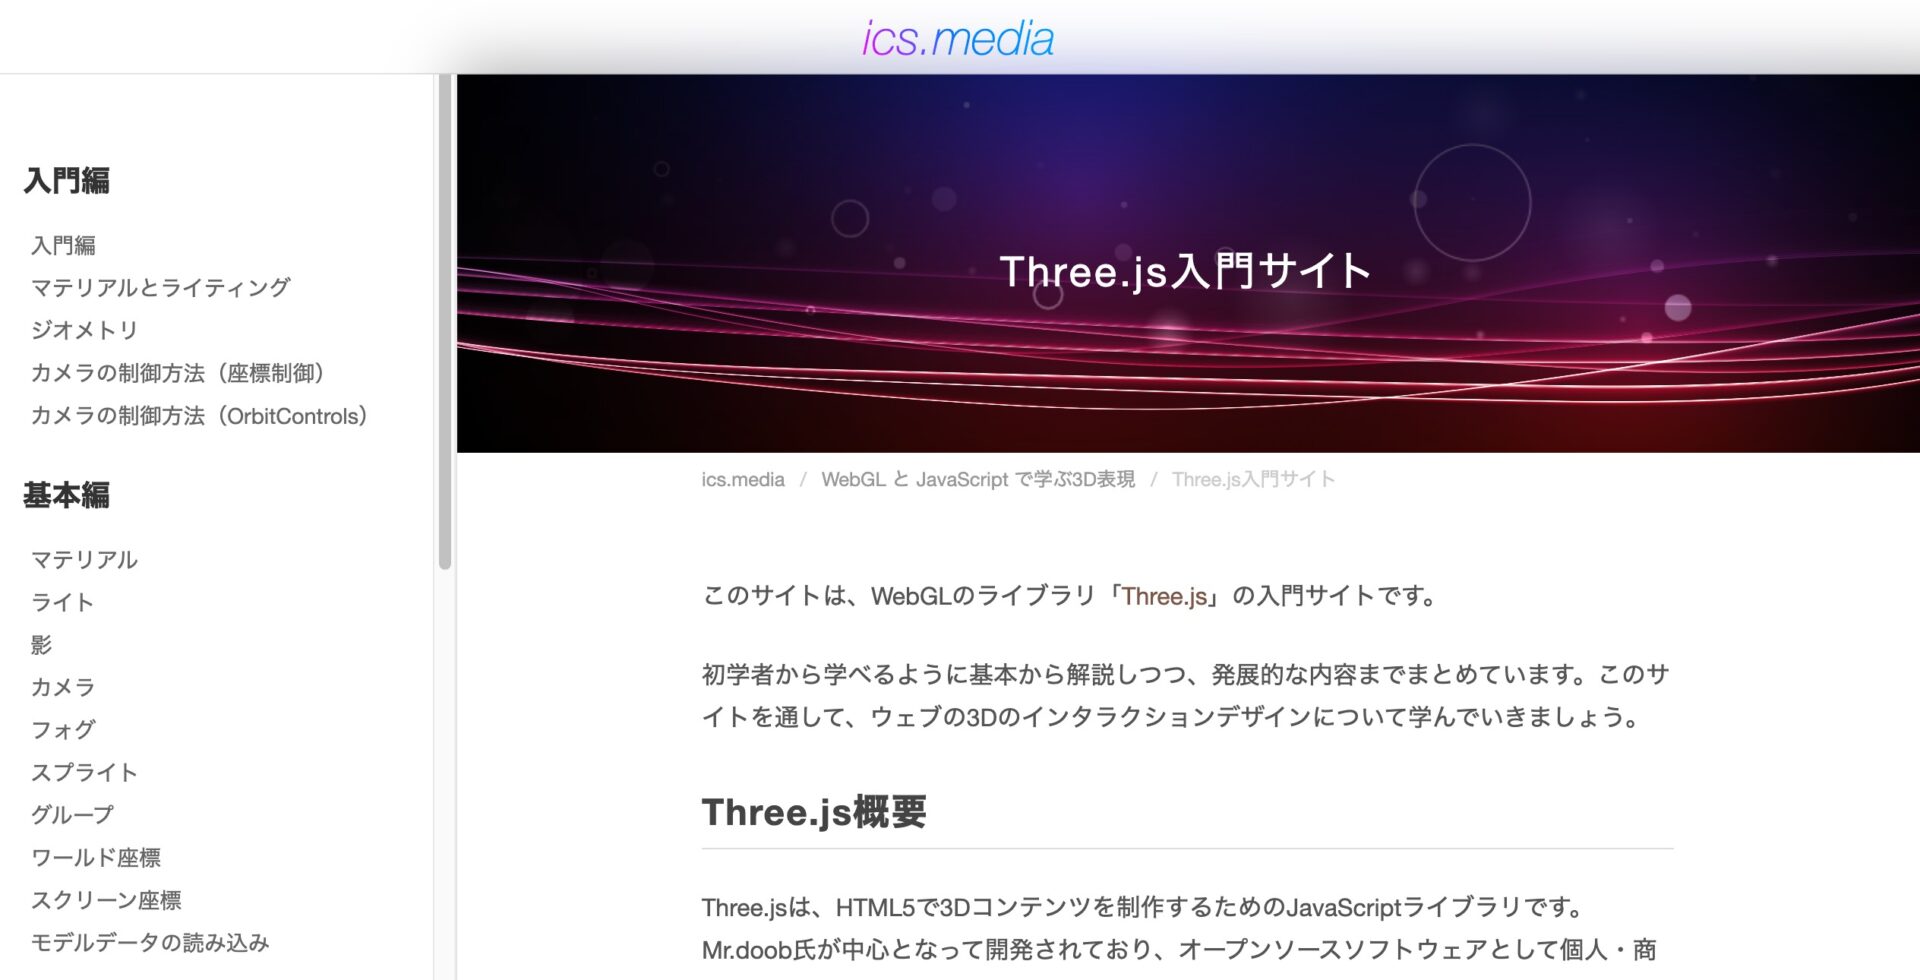 【Three.js入門】初心者がまず見るべきサイト・書籍まとめ